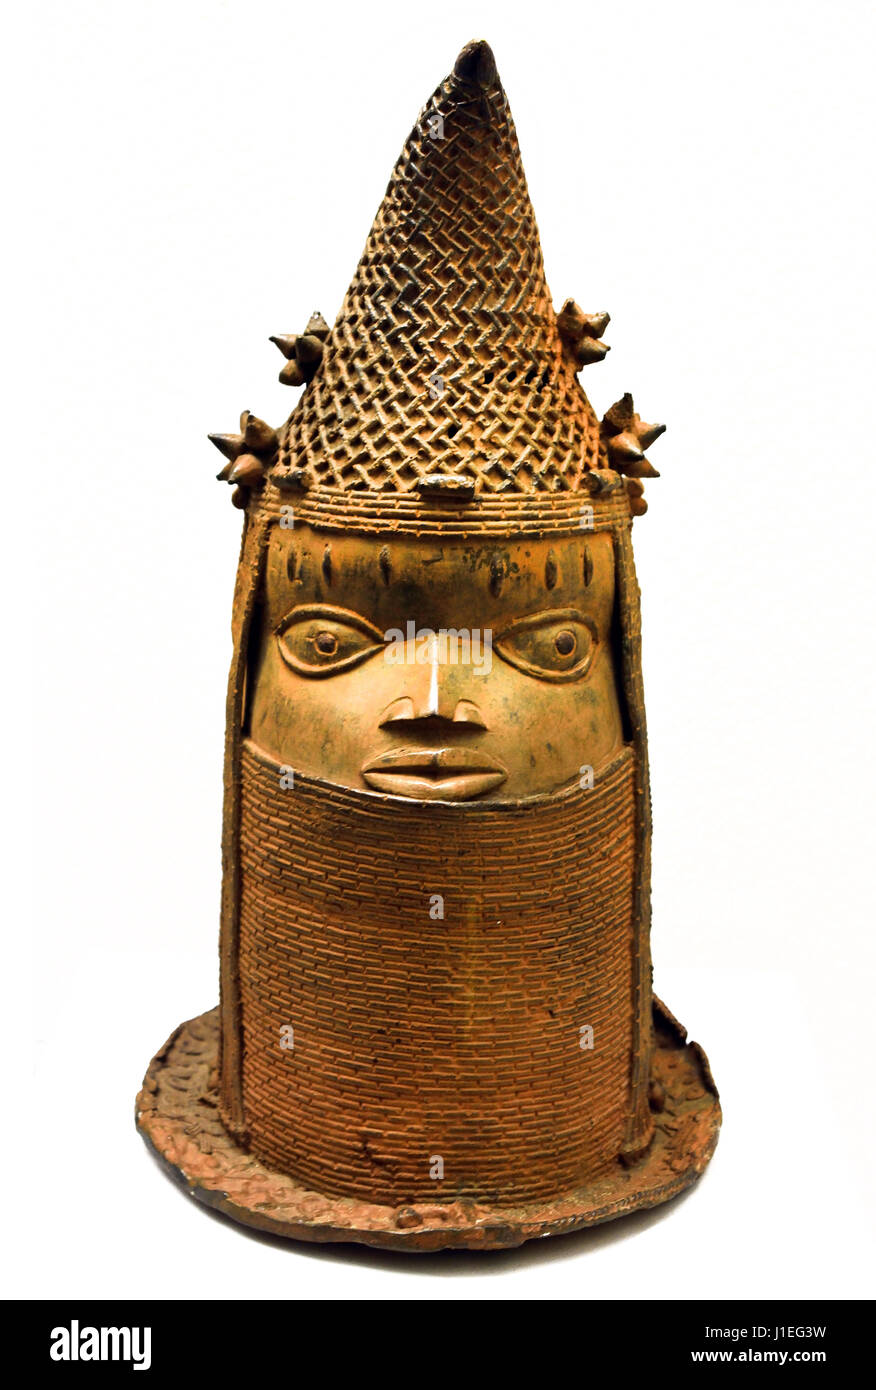 Memorial, tête, 16e siècle, 17e siècle, annonce, à partir de, Bénin, Nigeria, Afrique, Africain, chef d'une reine mère 18e siècle du Bénin, Nigéria Afrique Afrique (bronze) Banque D'Images